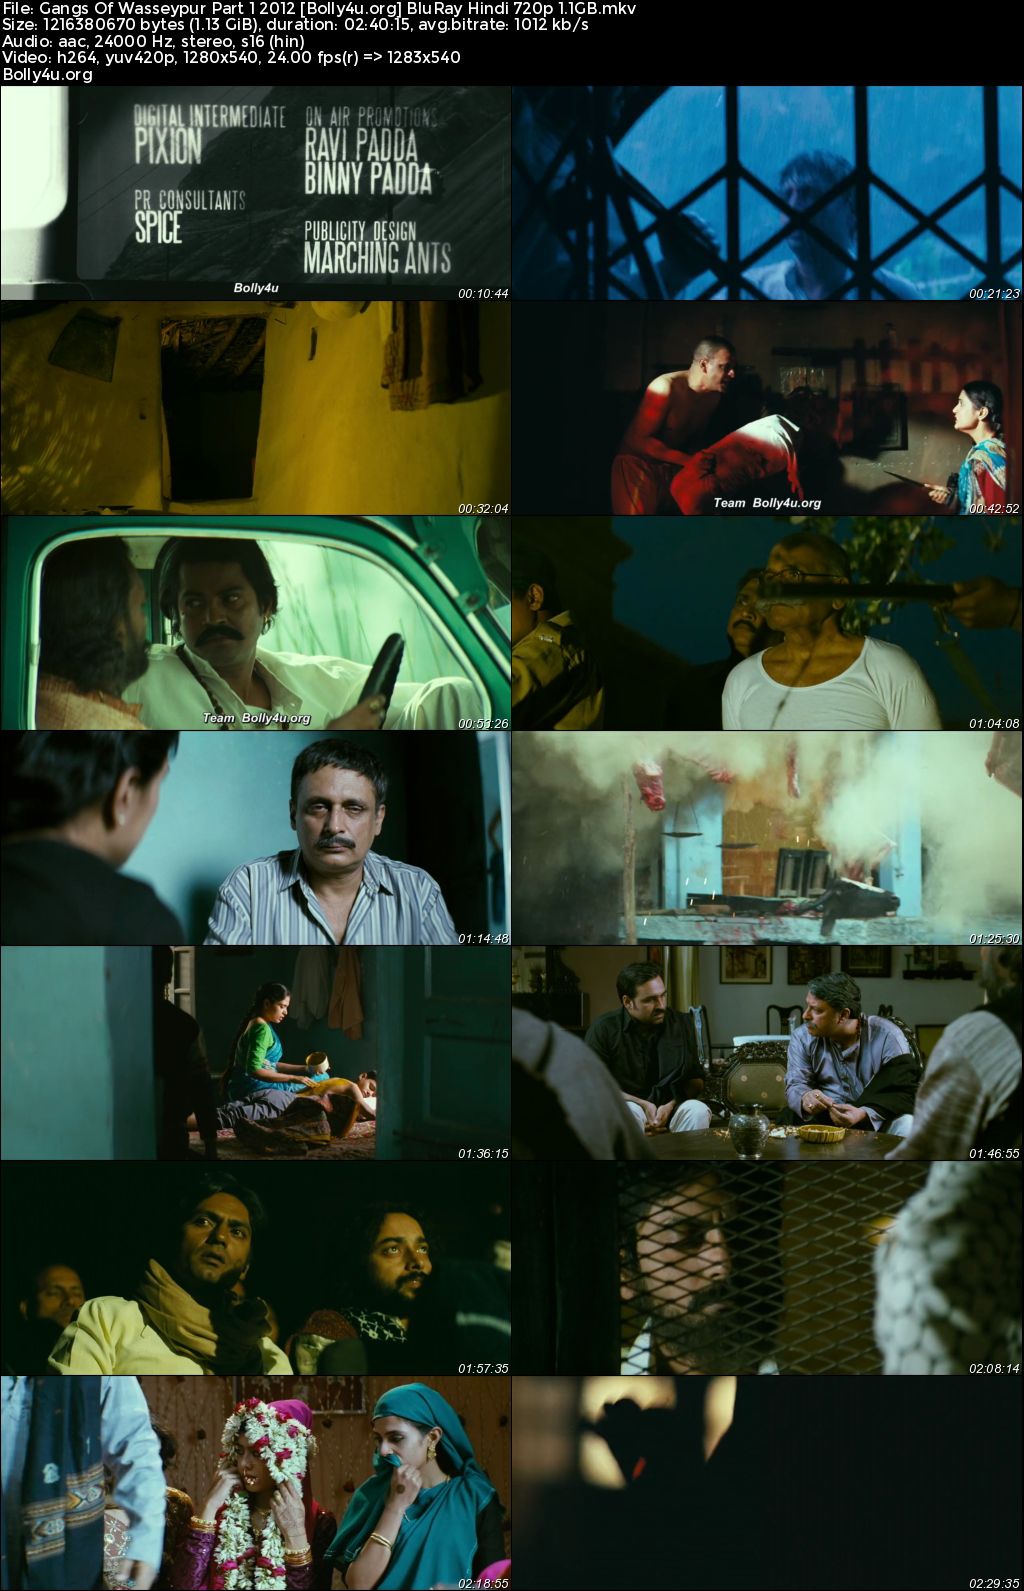 Gangs Of Wasseypur 2012 Part 01 BluRay Hindi Full Movie Download 1080p 720p 480p